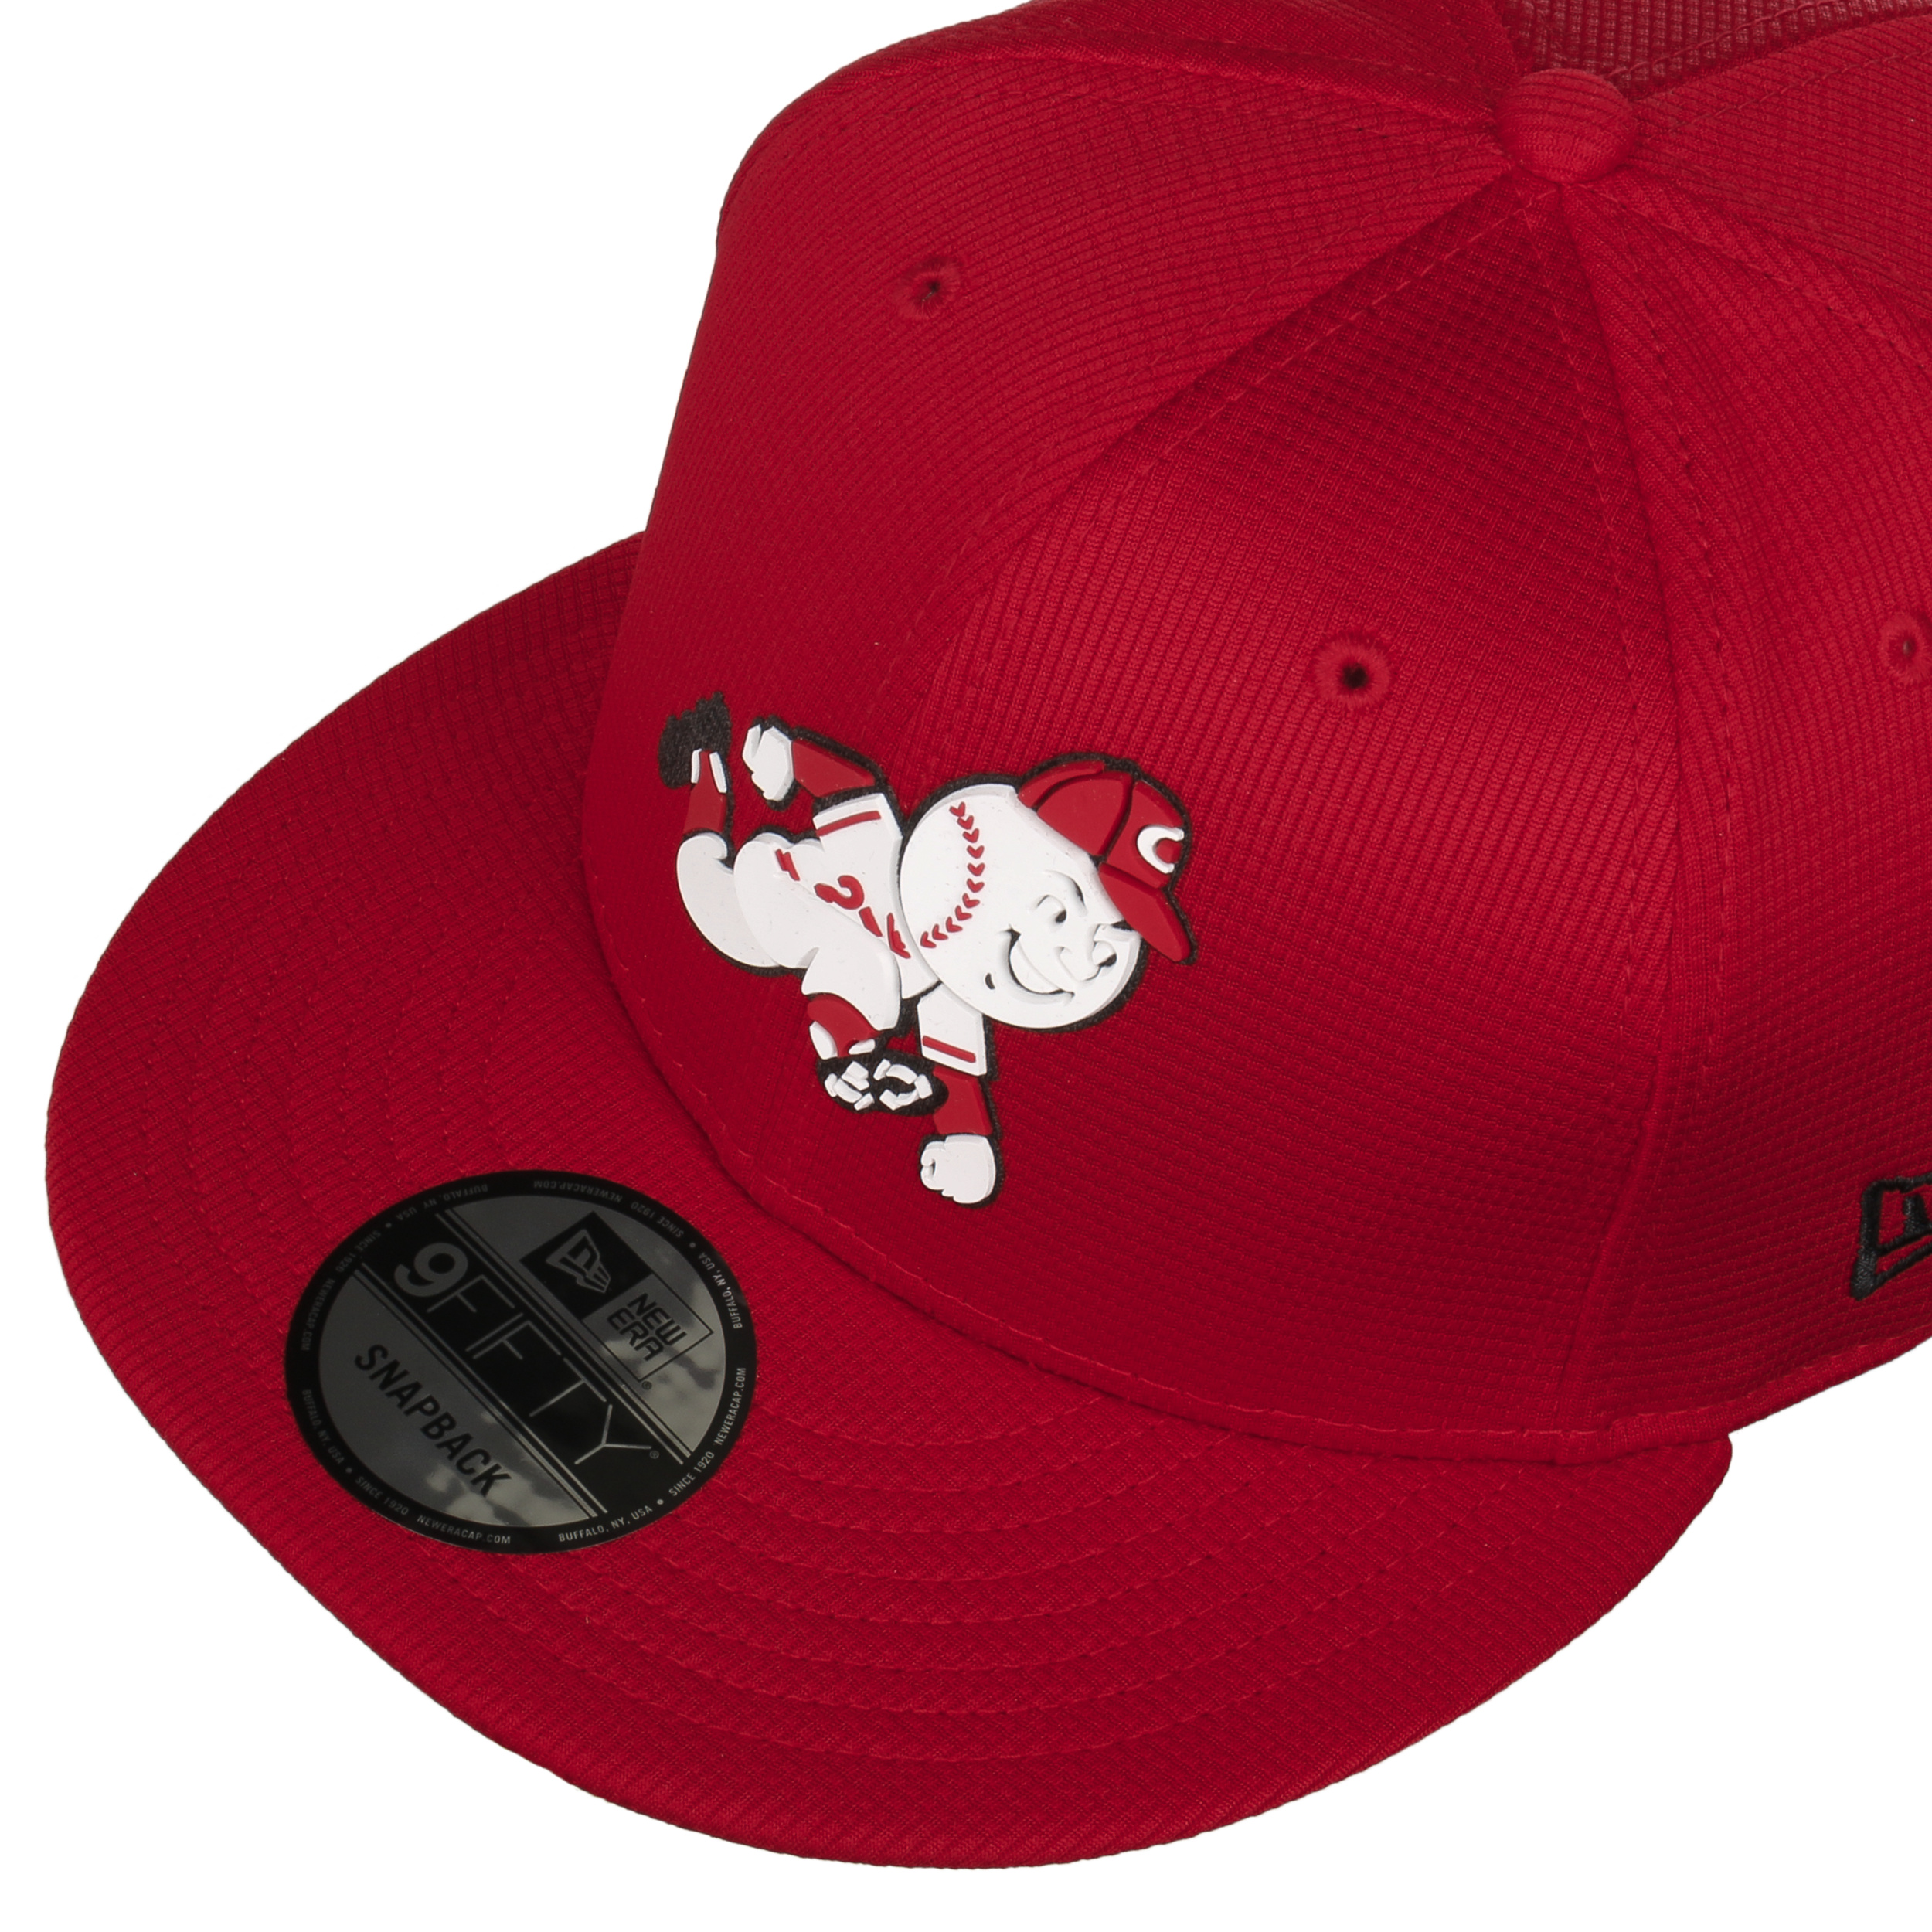 Cincinnati Reds Hat, Reds Hats, Baseball Cap